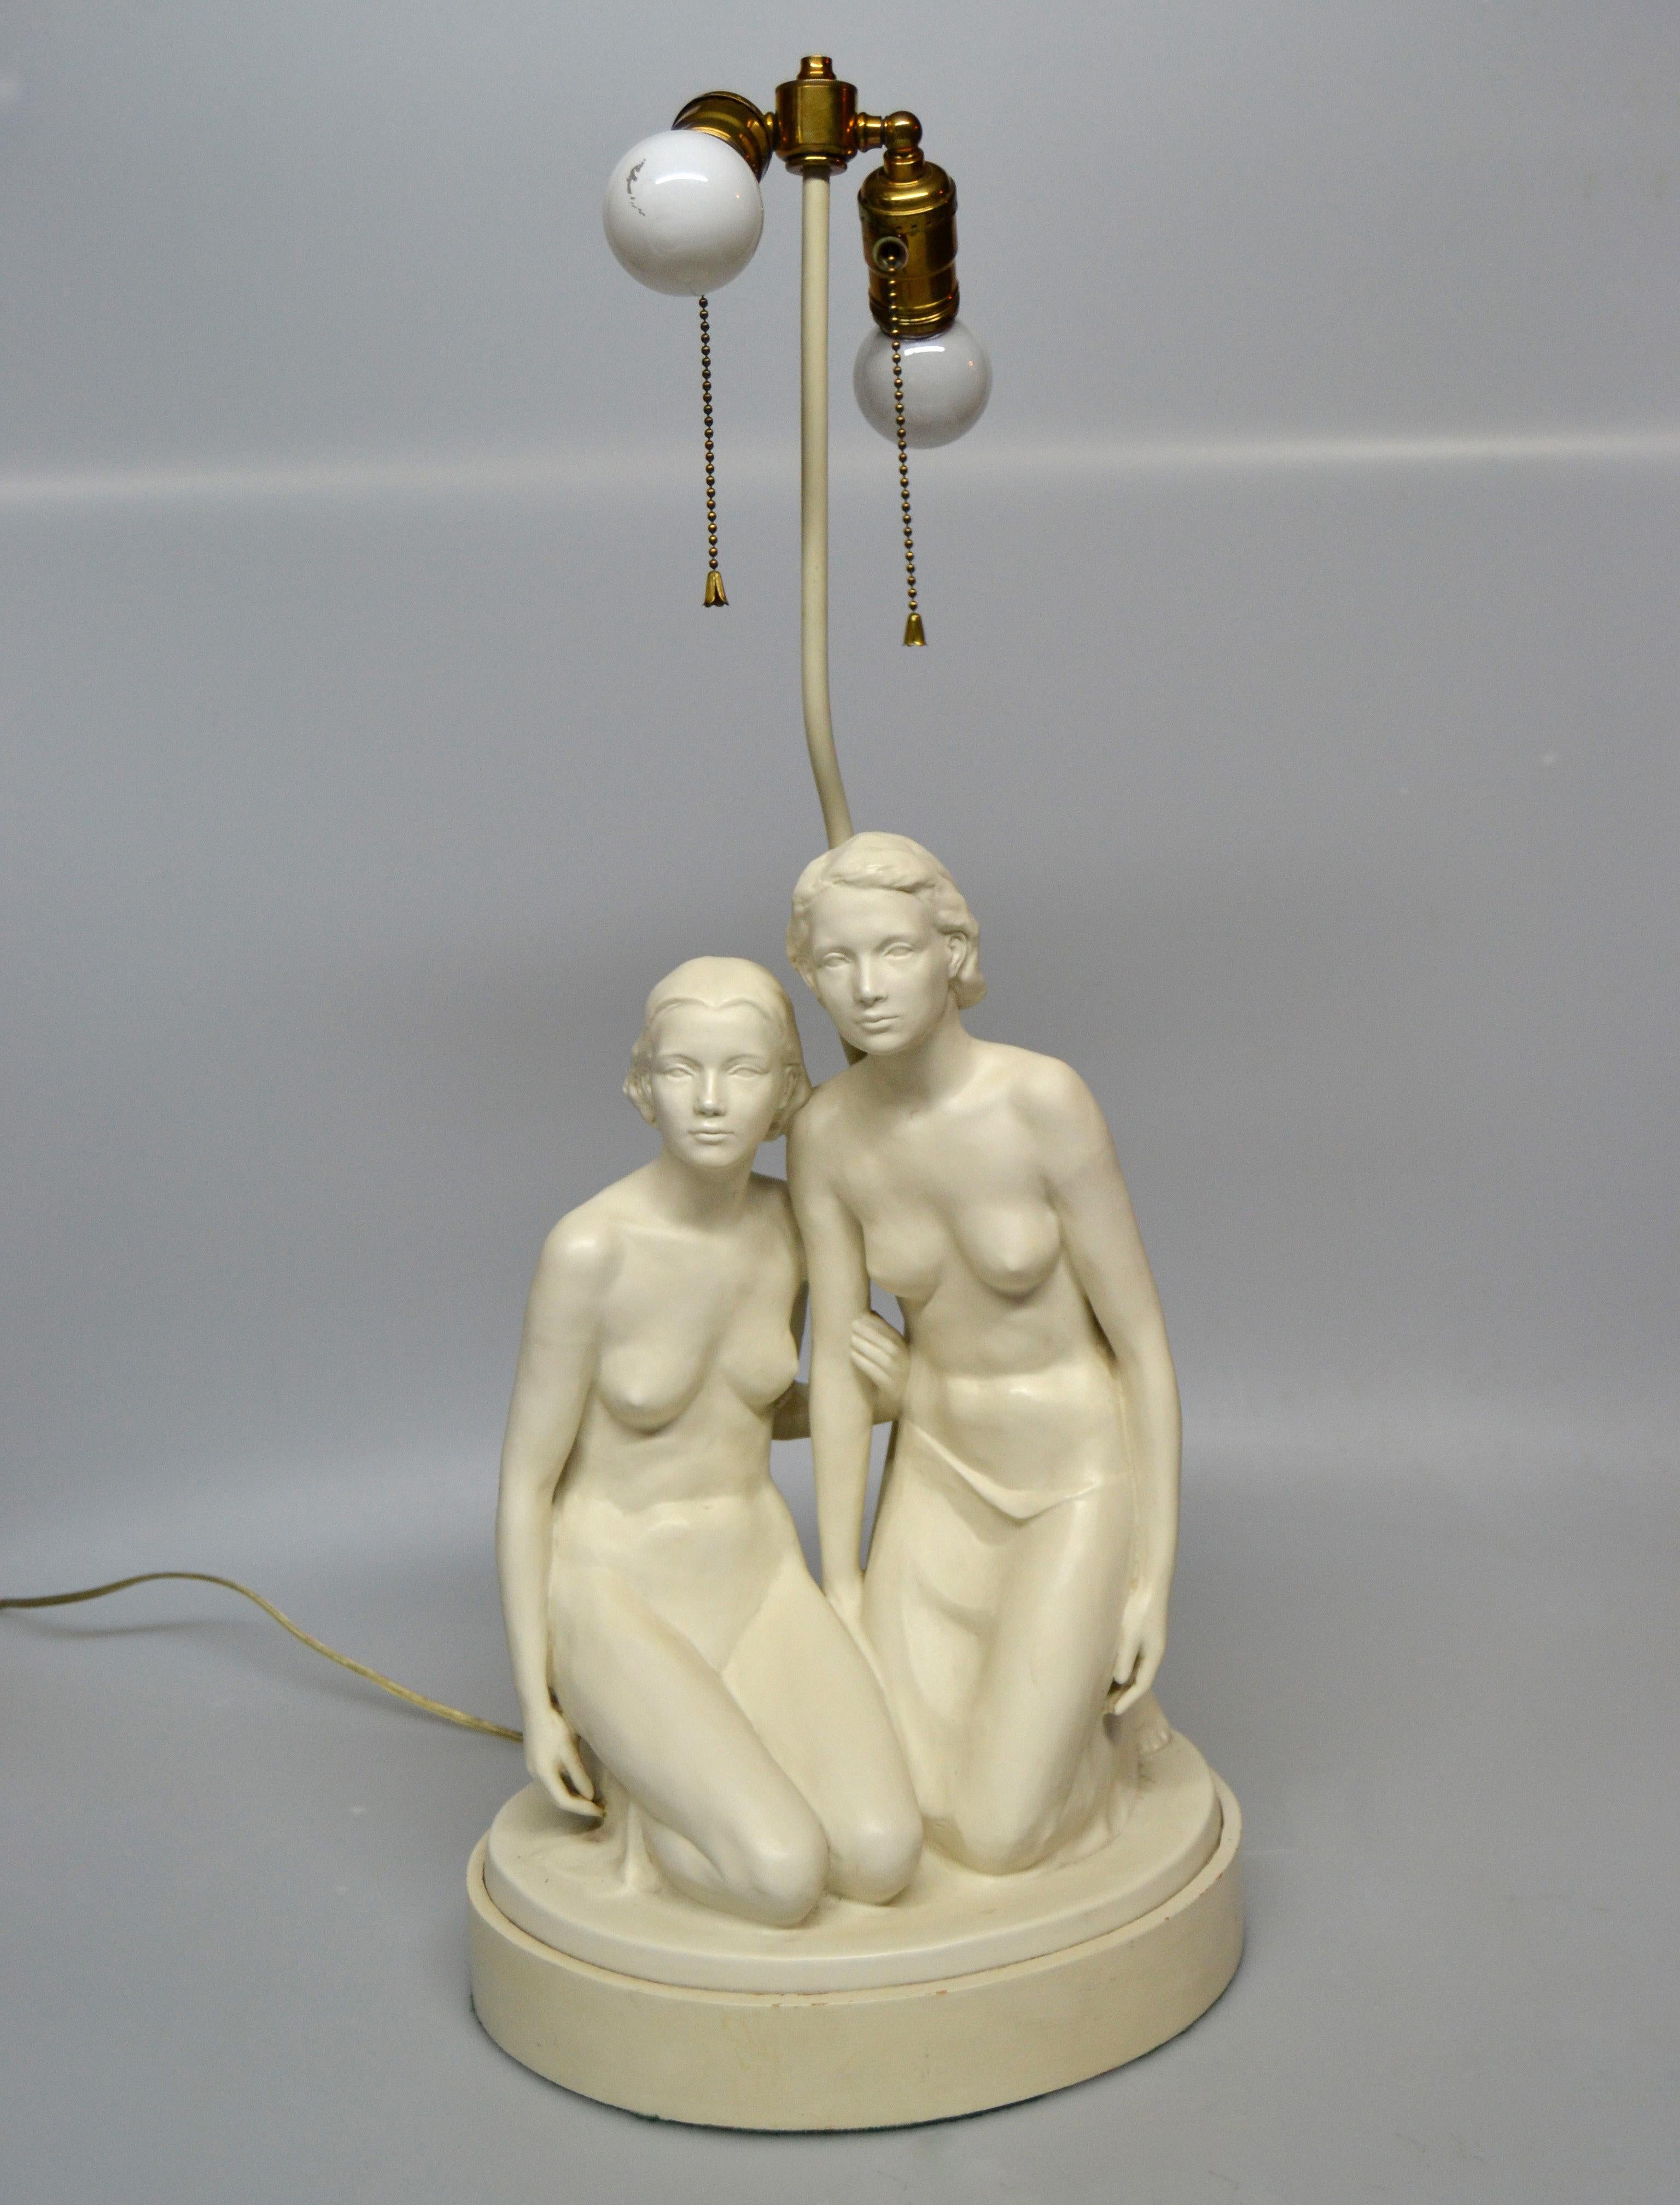 Lampe de table en plâtre de style moderne du milieu du siècle, avec deux femmes nues sculptées à la main et montée sur une base en métal.
Les porte-lampes sont en laiton avec des douilles à double faisceau et des cordons de tirage.
Peut supporter